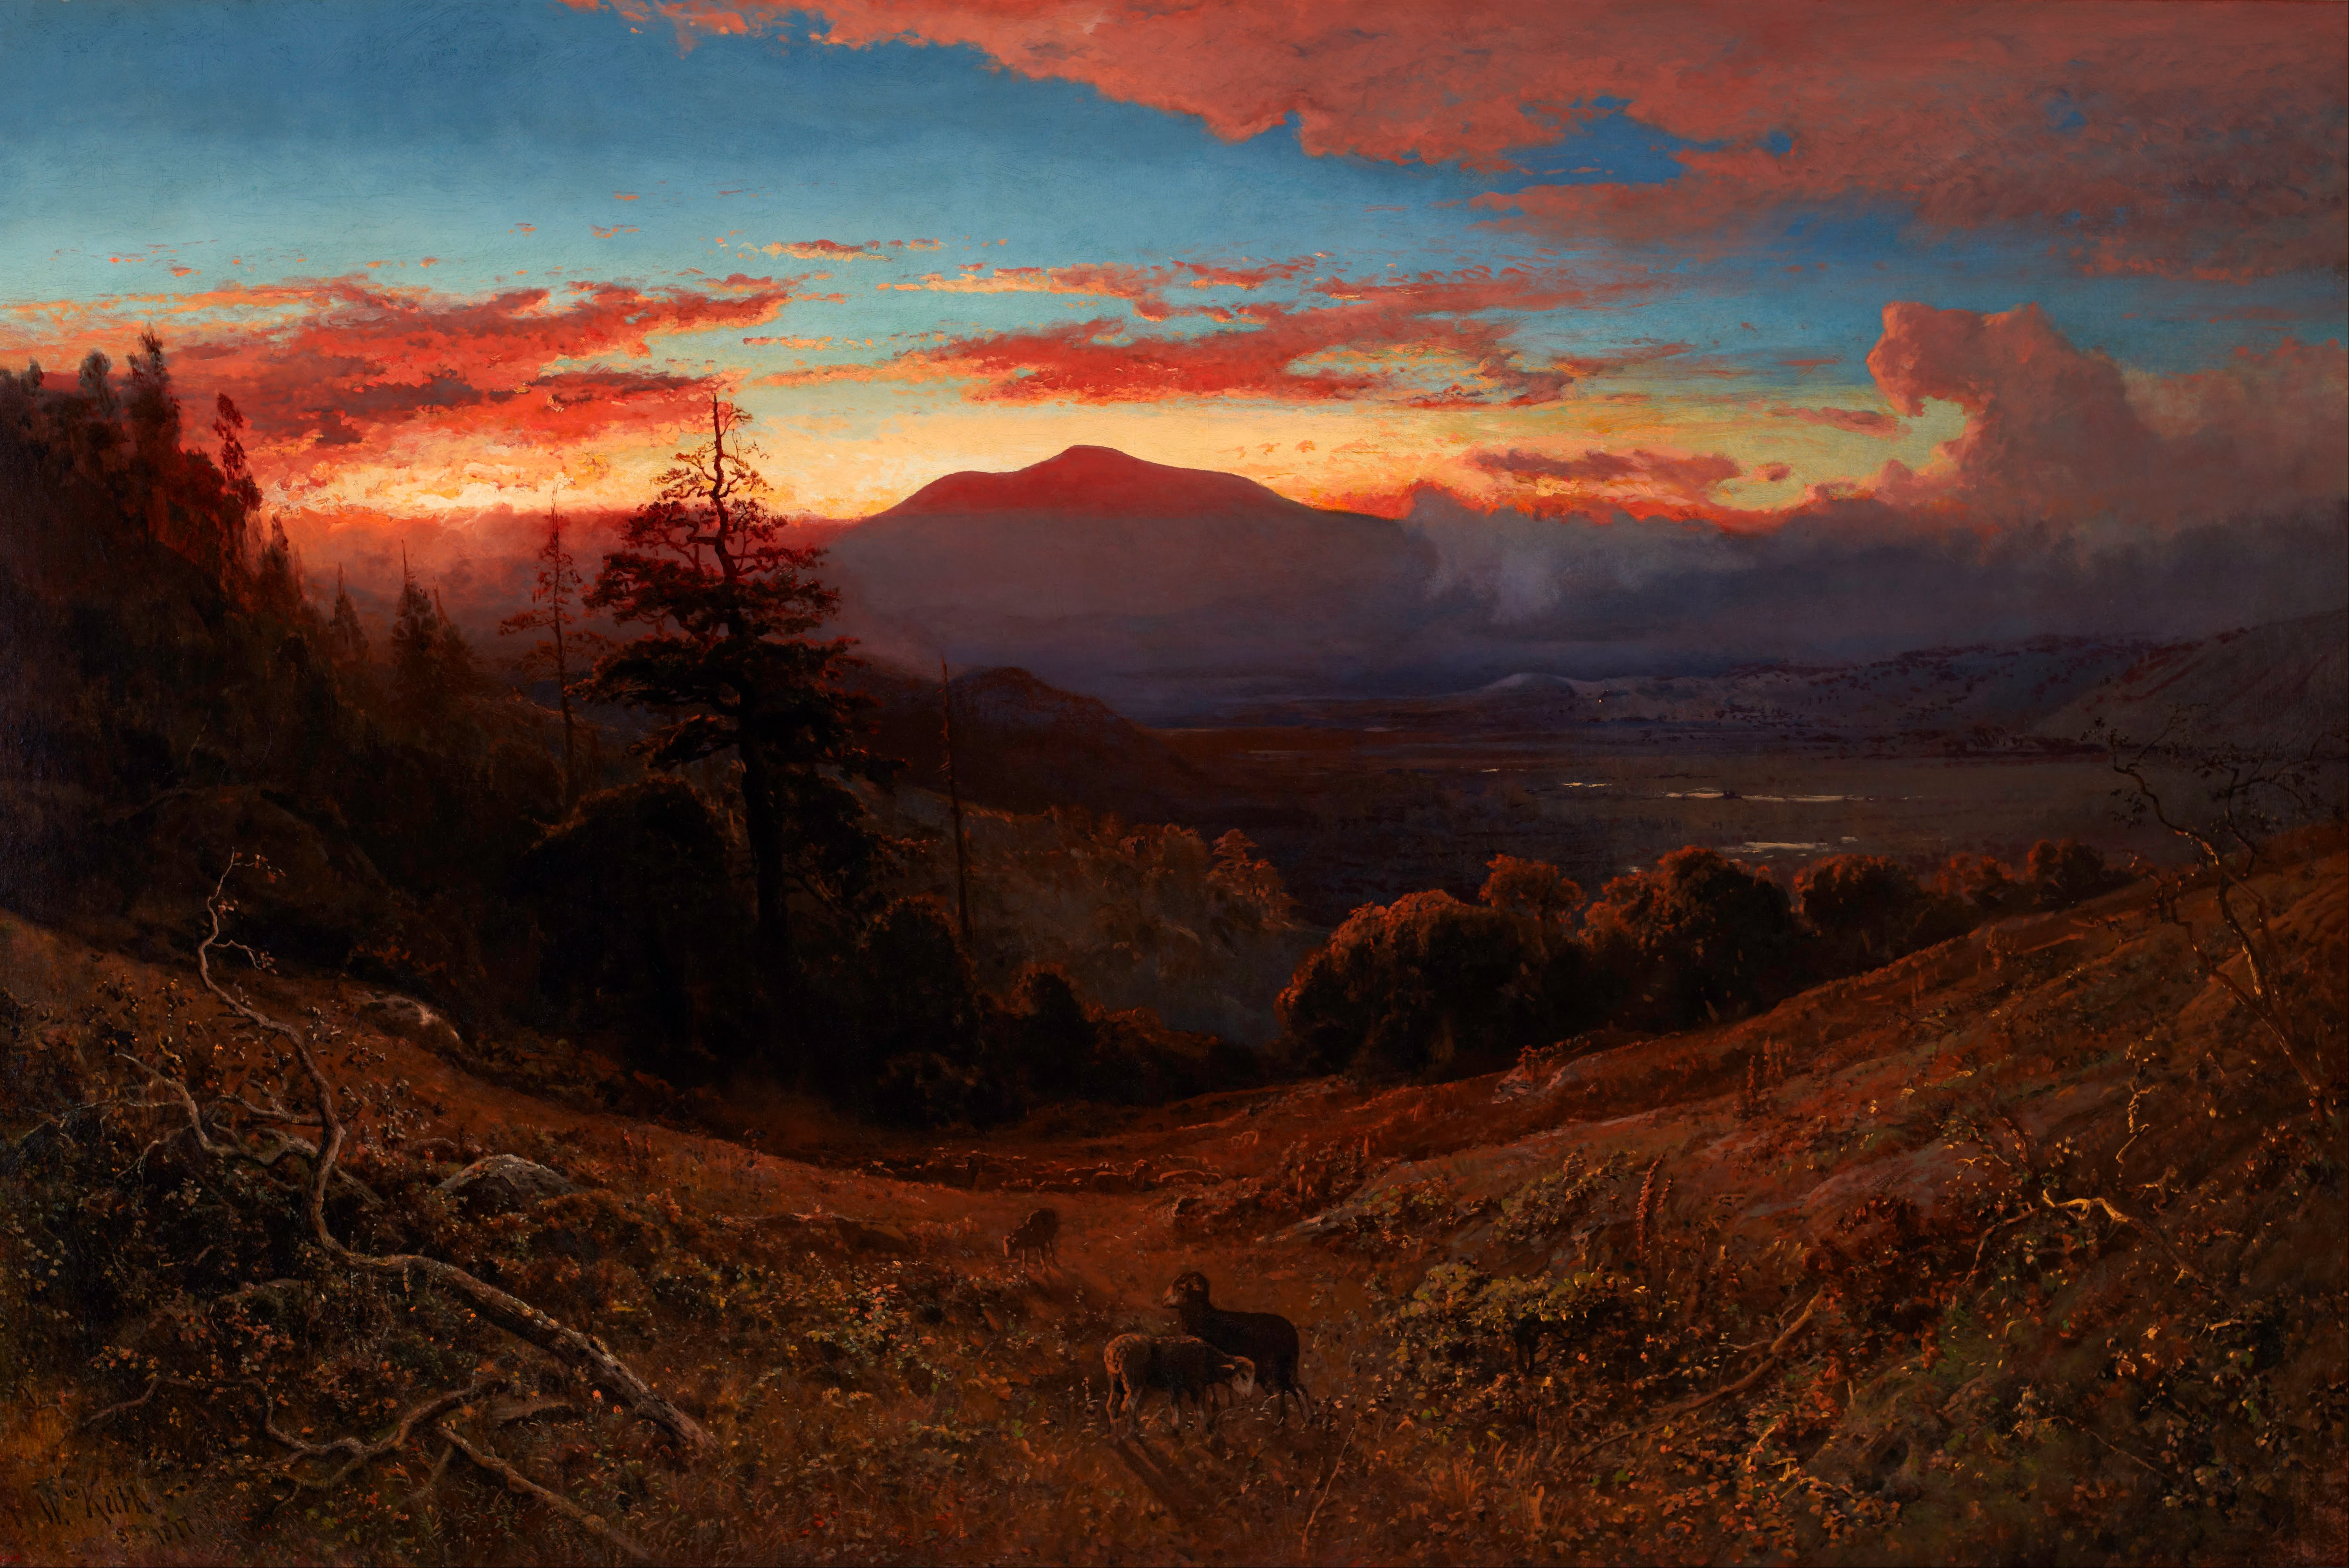 Puesta del Sol en el Monte Diablo by William Keith - 1877 Cantor Arts Center at Stanford University